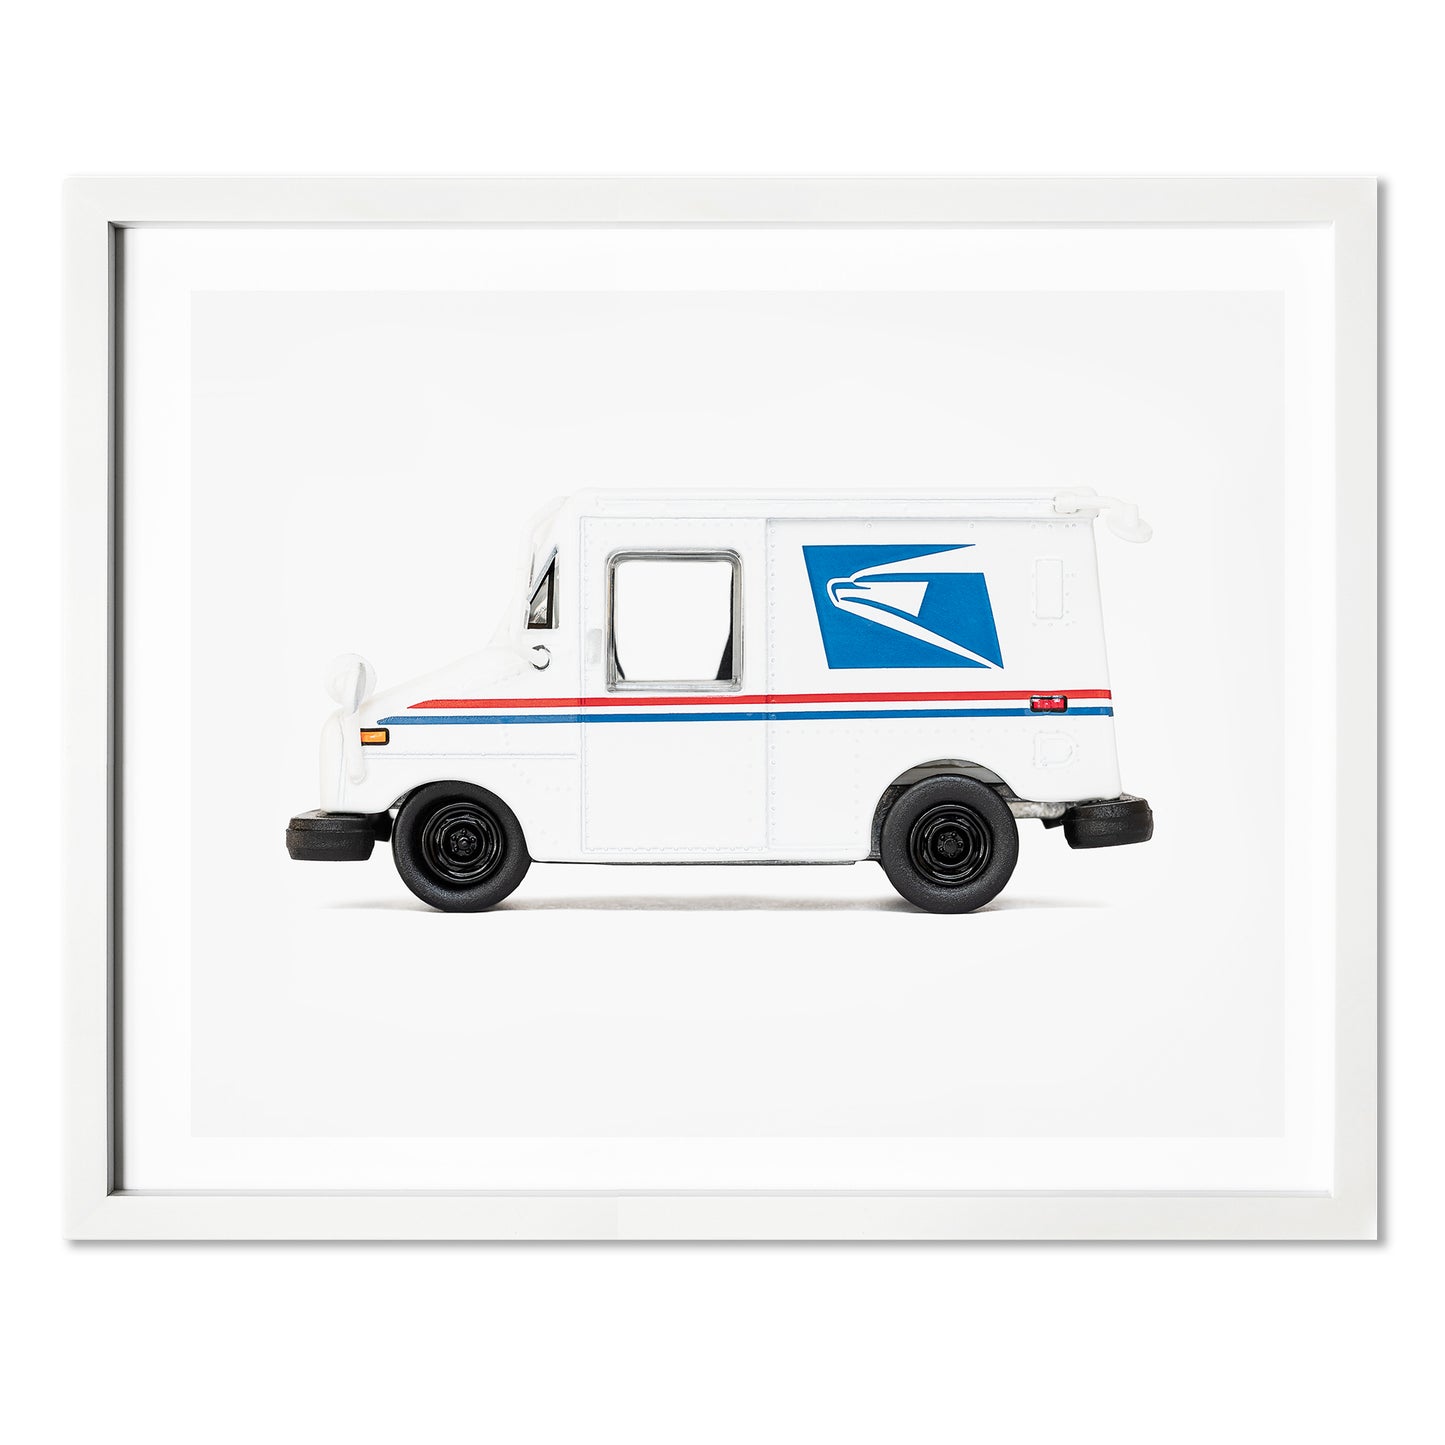 Post Office Truck Wall Art